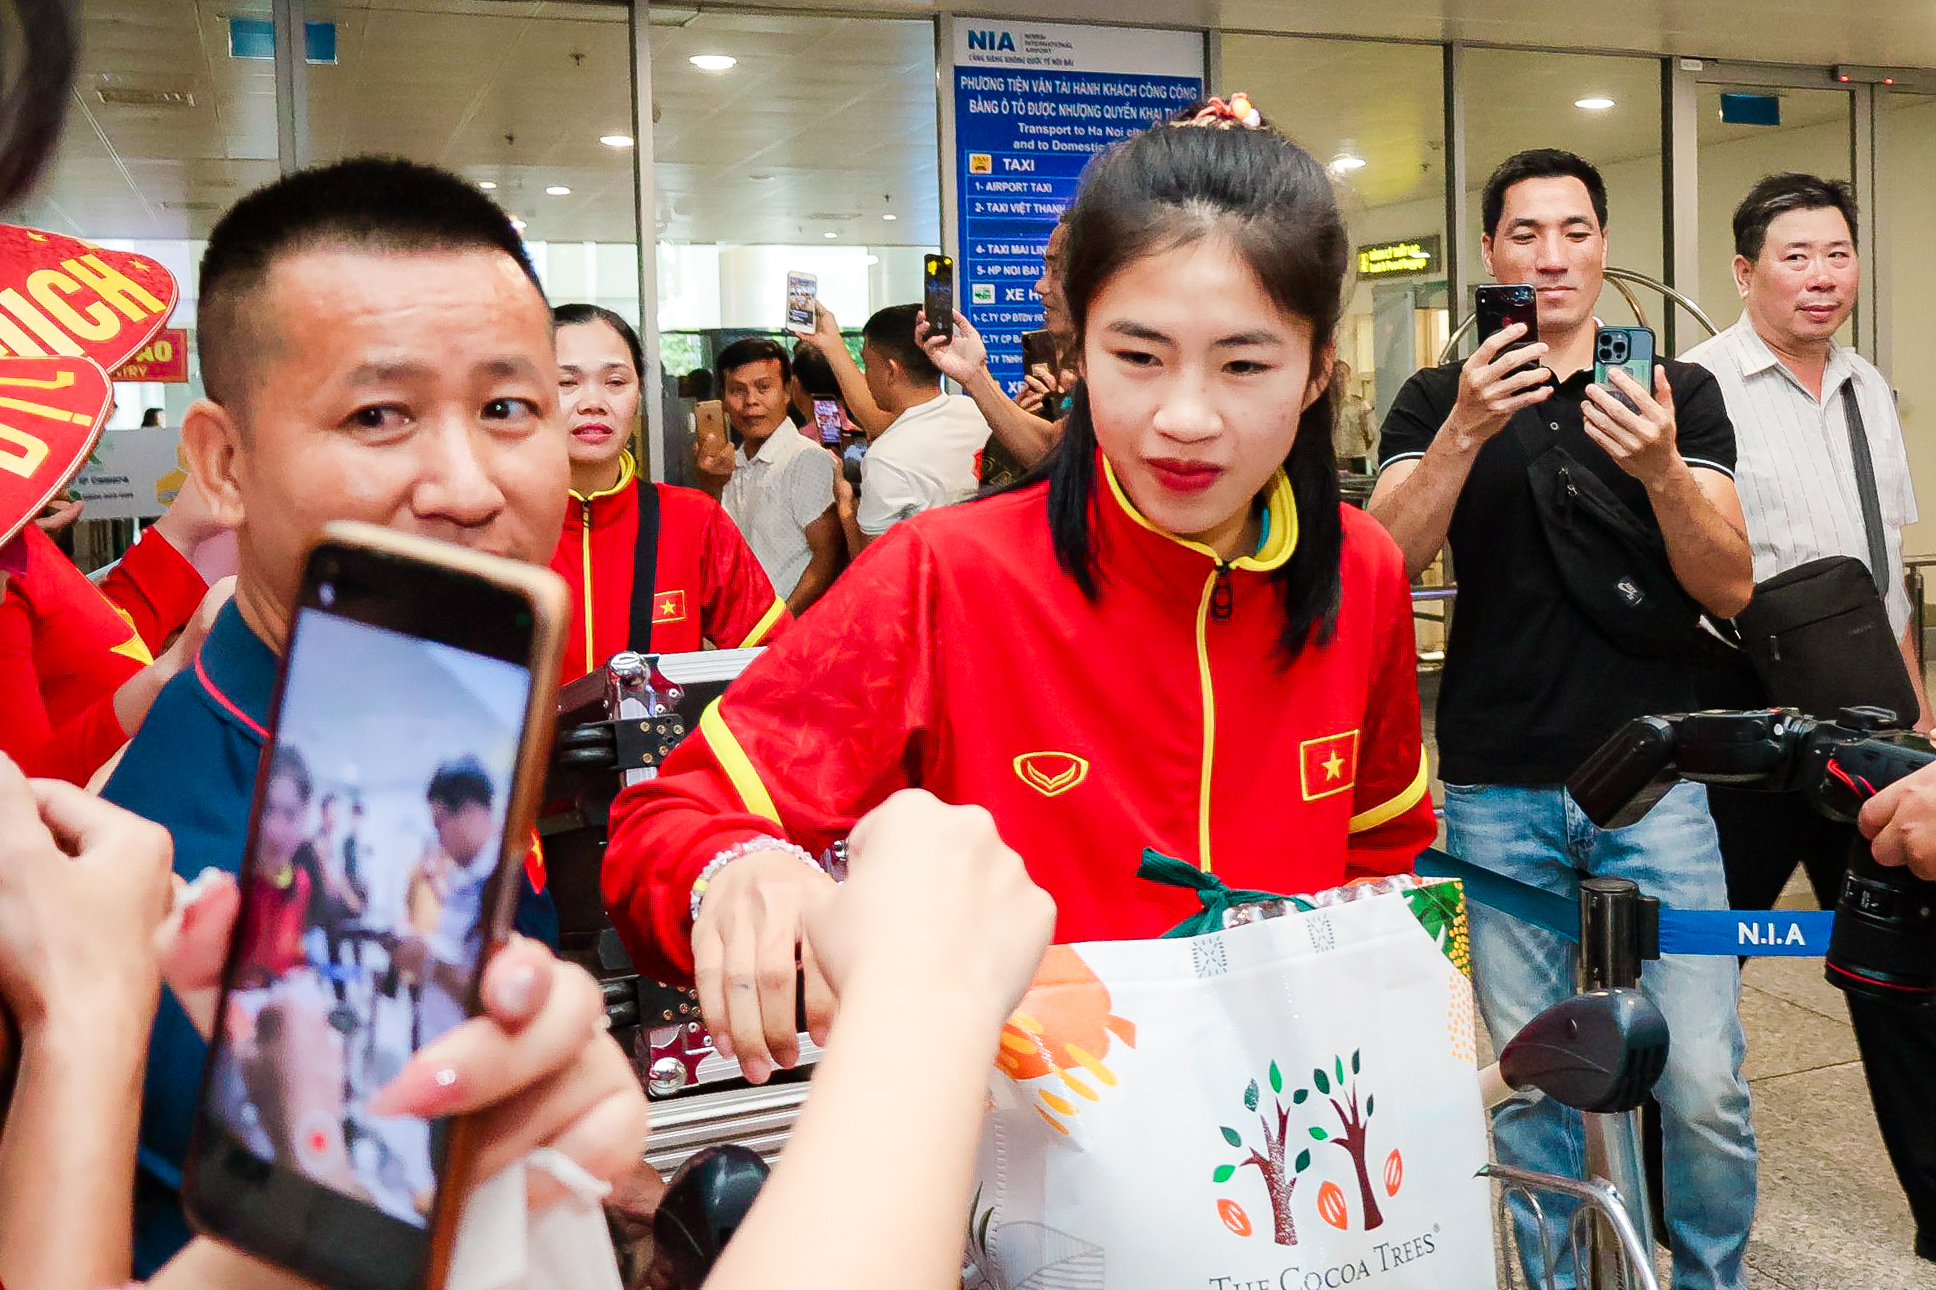 HLV Mai Đức Chung cùng nữ tuyển thủ rạng ngời trở về sau hành trình World Cup lịch sử - Ảnh 12.